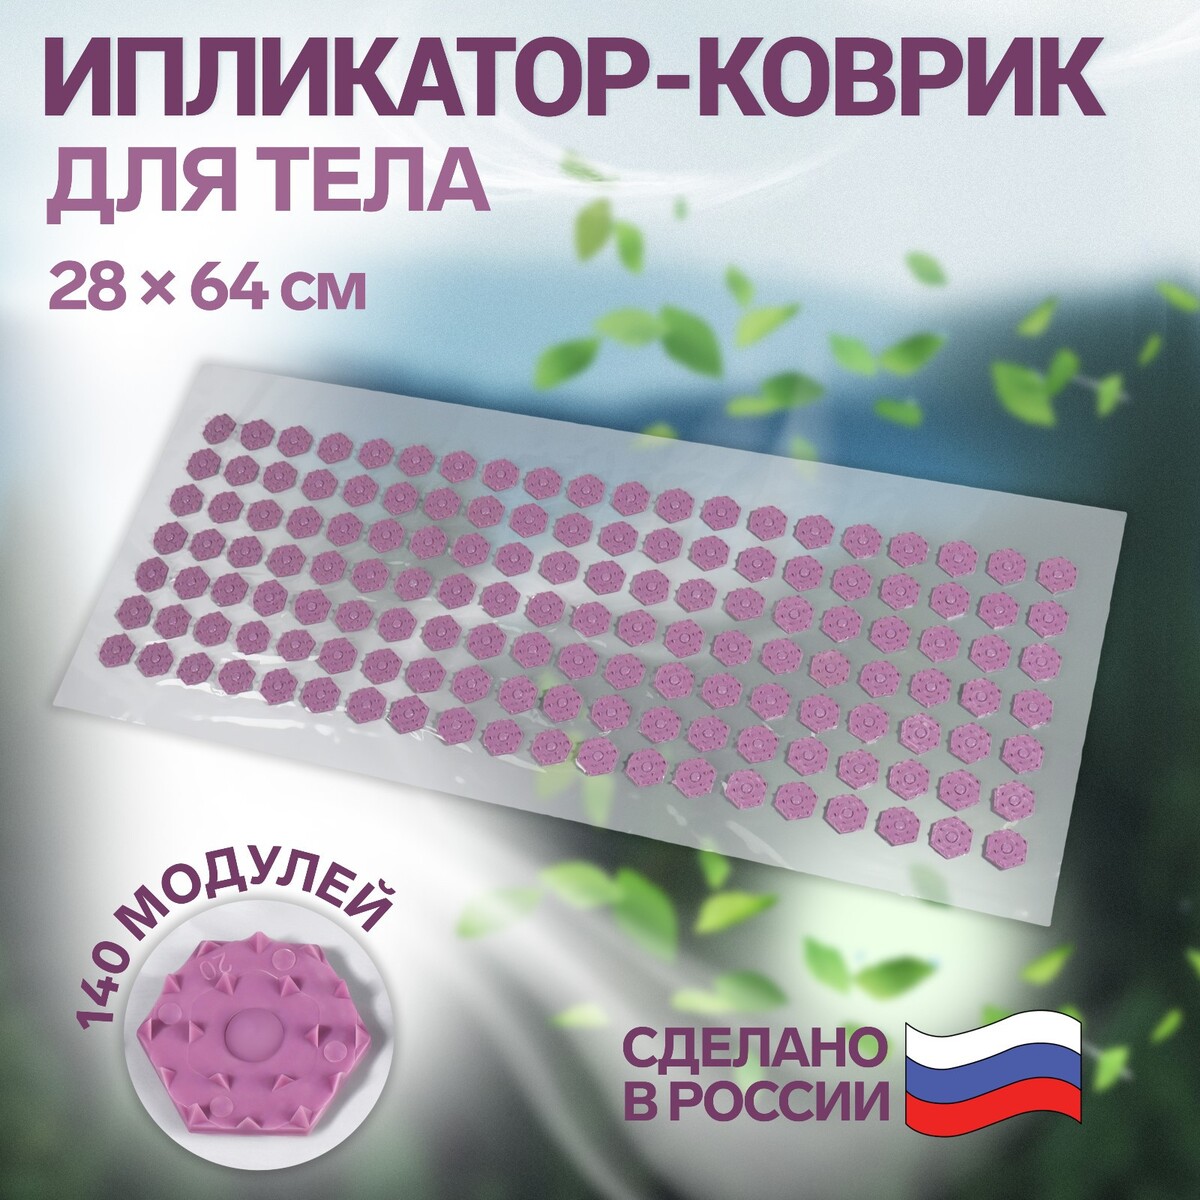 Ипликатор-коврик, основа пвх, 140 модулей, 28 × 64 см, цвет прозрачный/фиолетовый ONLITOP